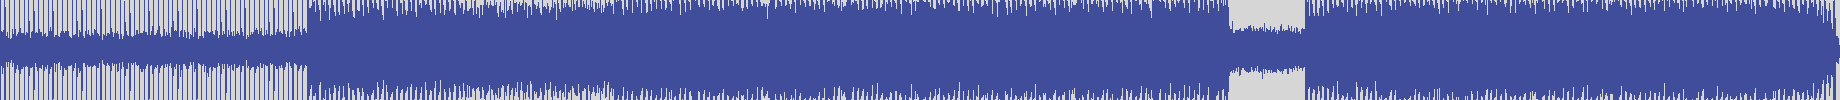 nf_boyz_records [NFY017] Zuker - Arp Desorder [Acid Mix] audio wave form